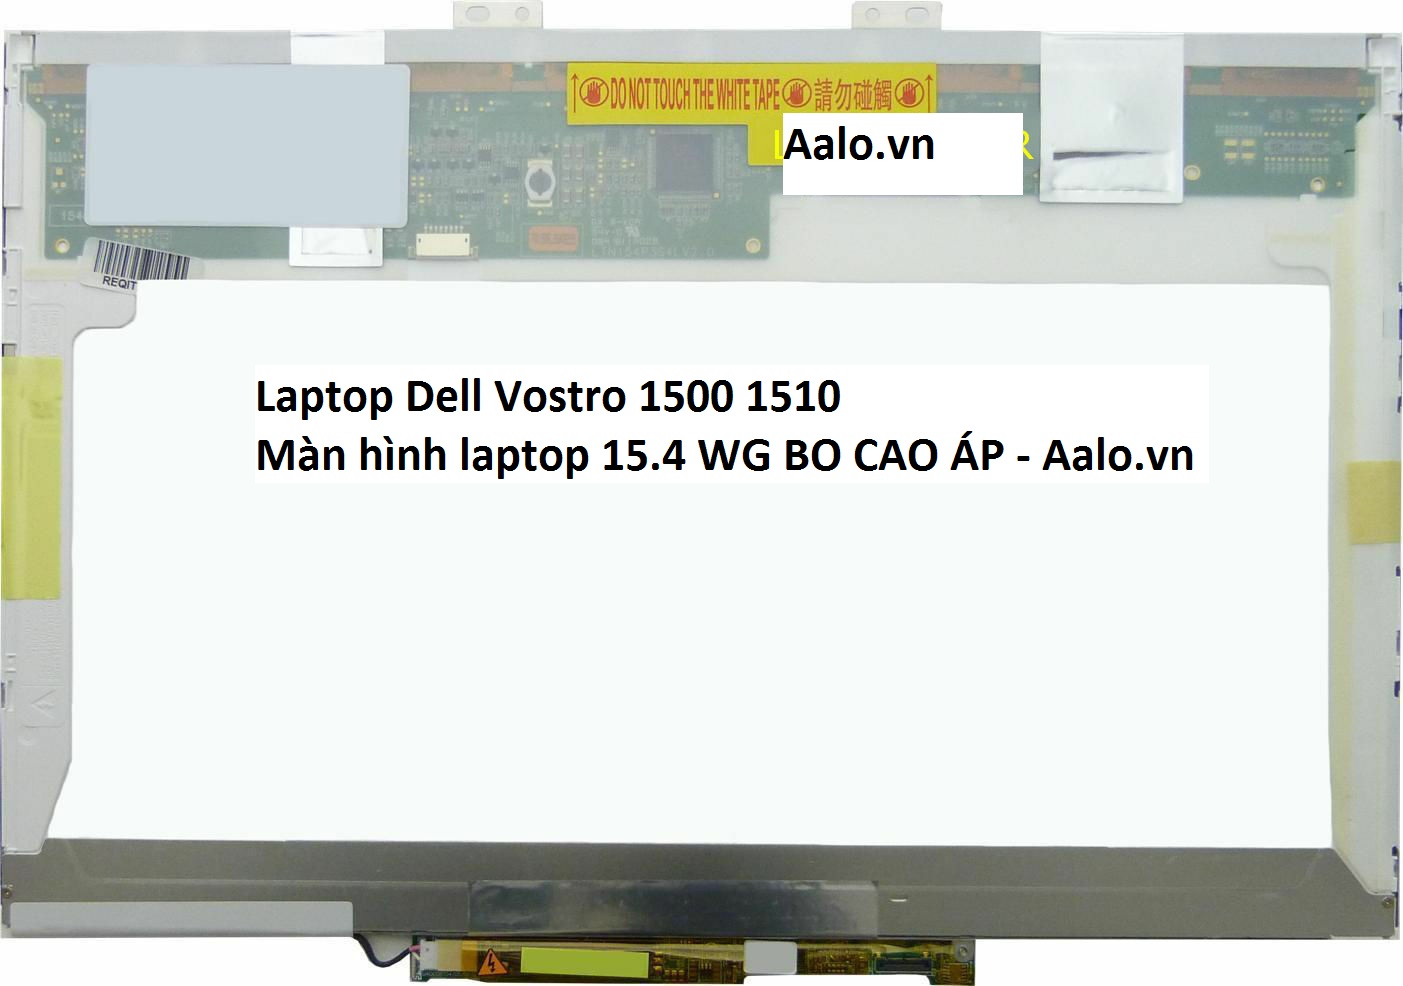 Màn hình Laptop Dell Vostro 1500 1510 - Aalo.vn